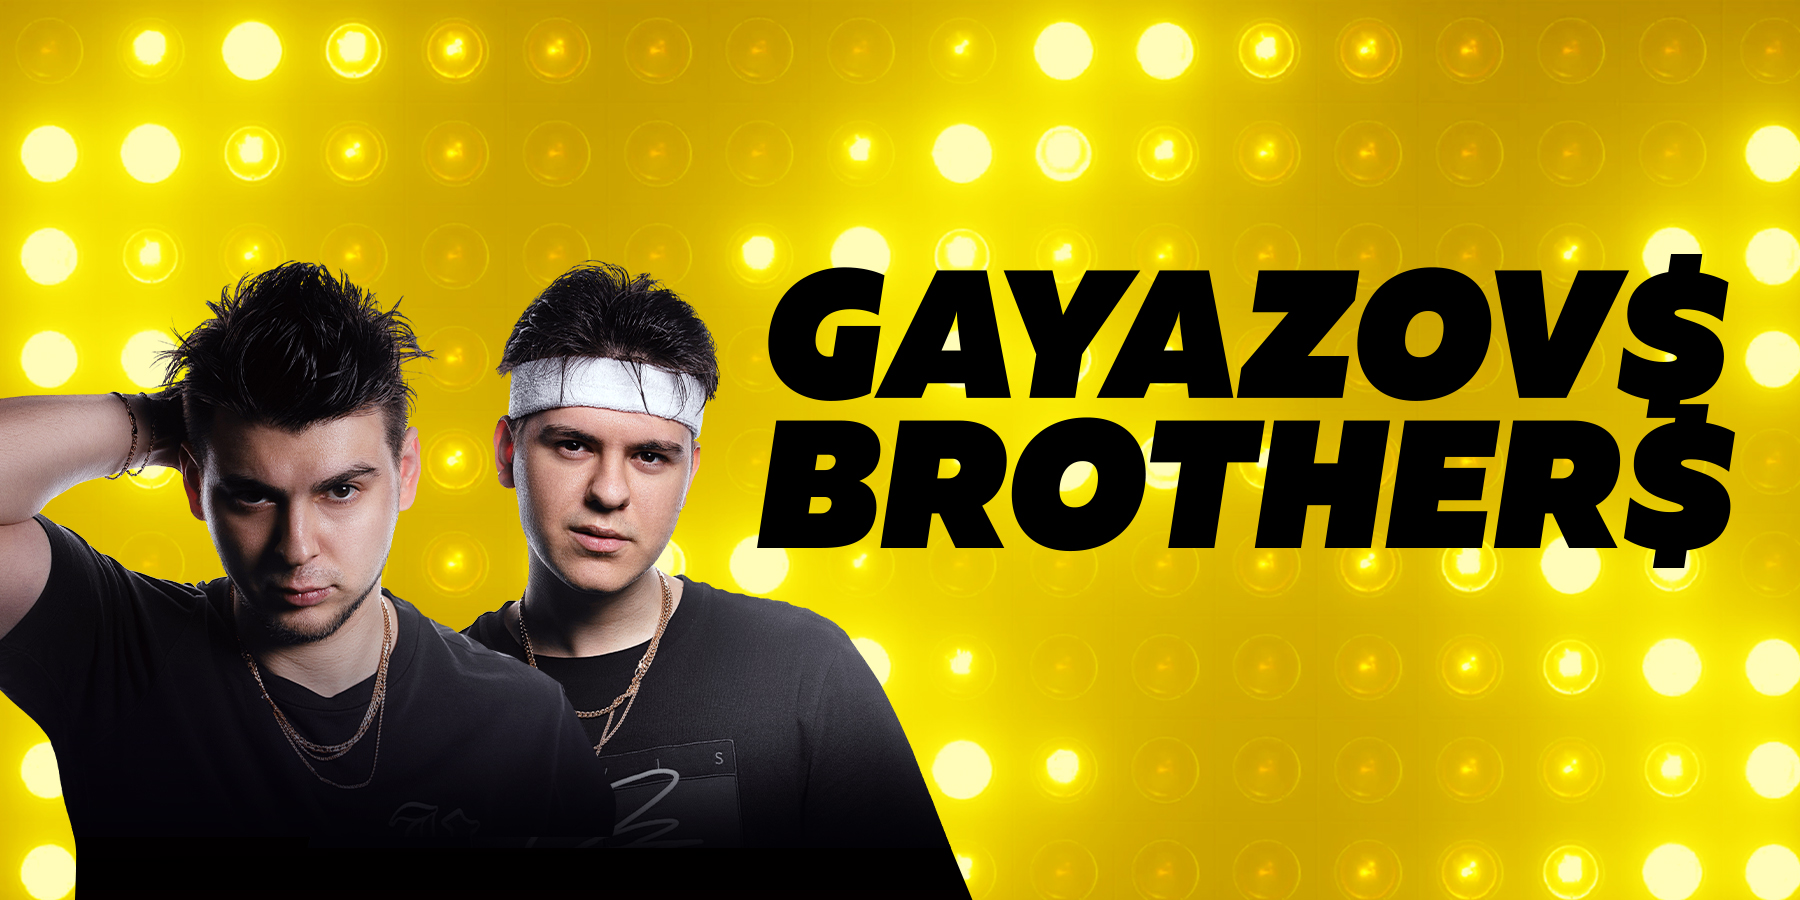 Группа "Gayazovs Brothers"